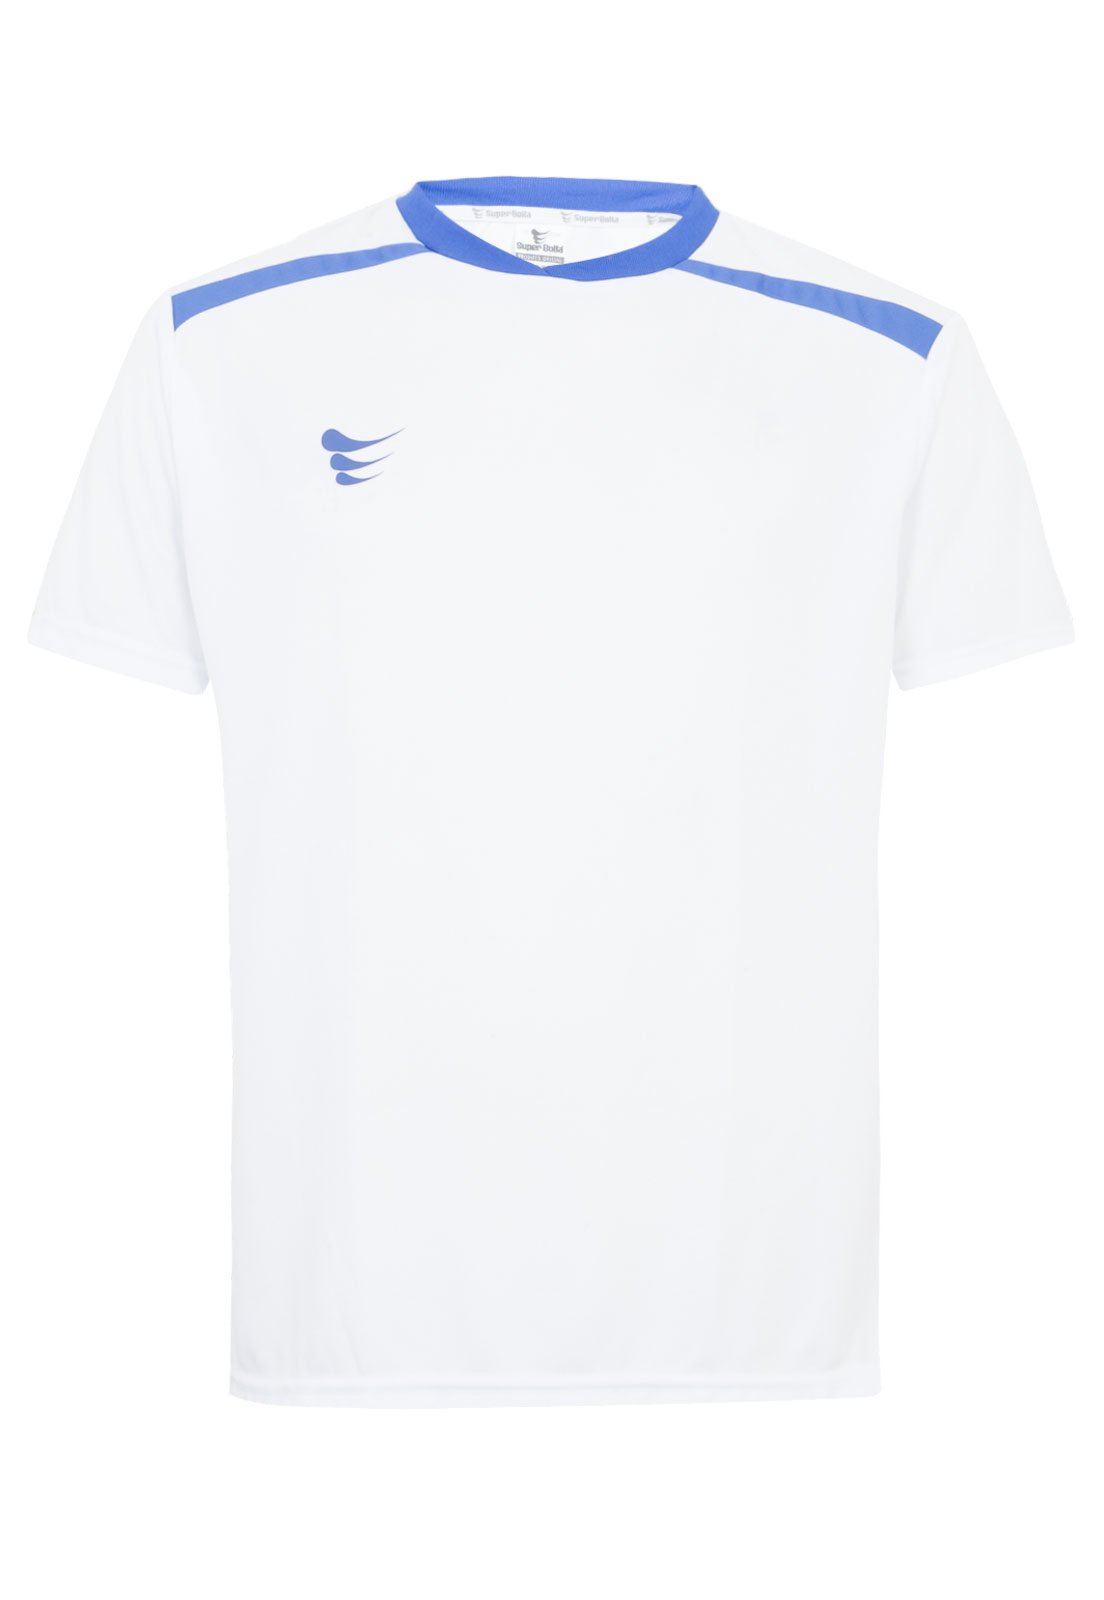 camisa compressao super bolla manga longa - Mania de Futsal